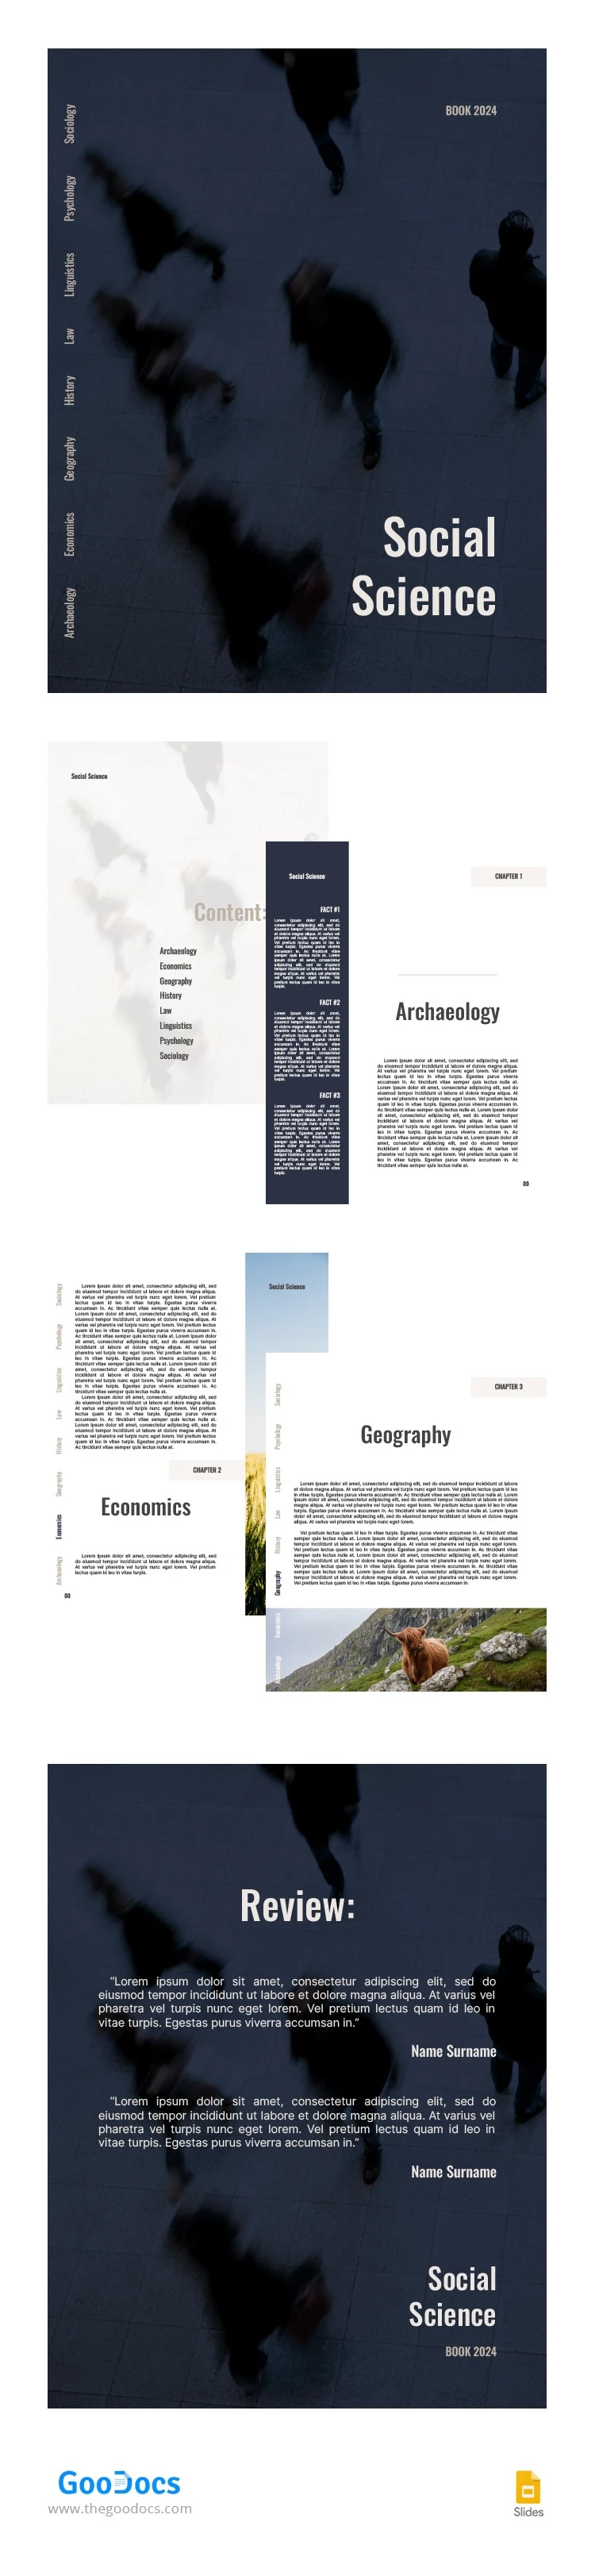 Libro di Scienze Sociali Strutturali Moderno - free Google Docs Template - 10065923